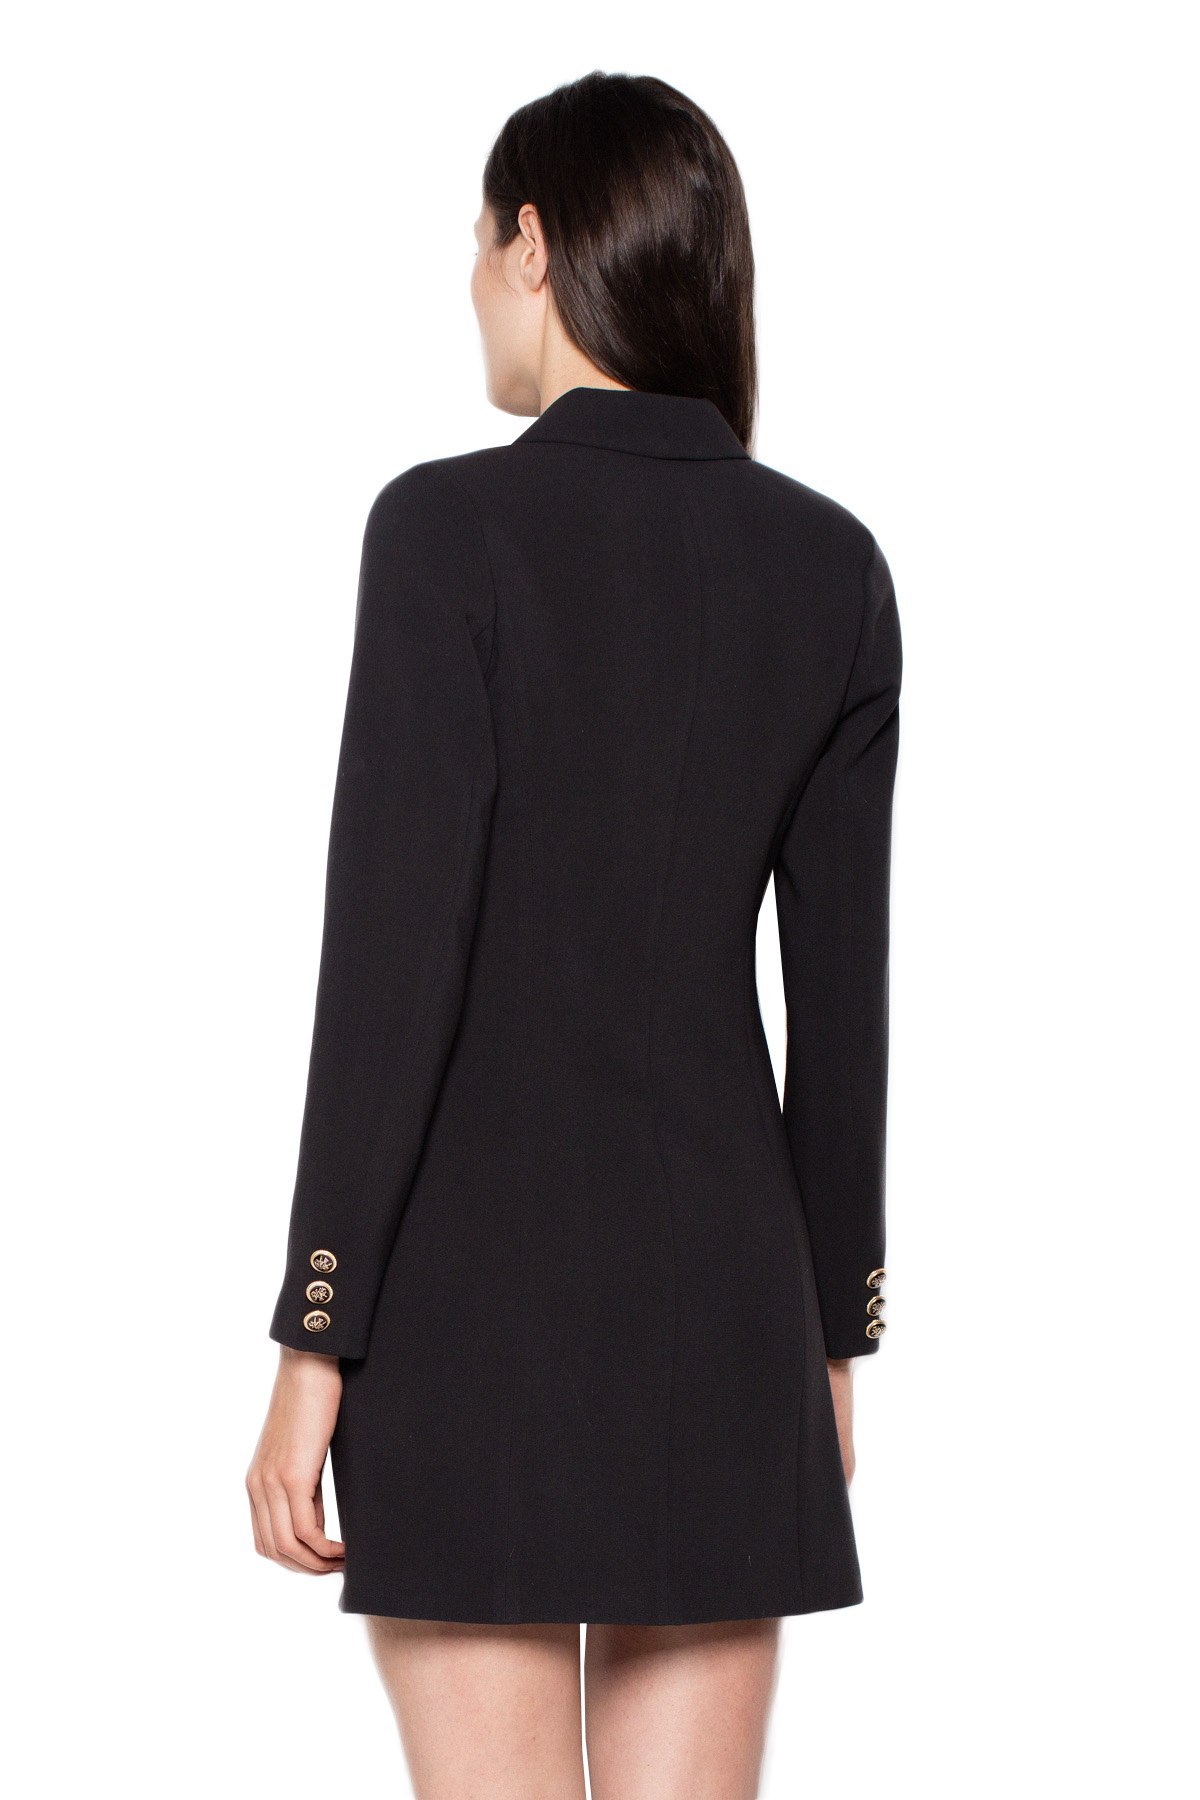 Elegancka sukienka żakietowa mini zapinana długi rękaw czarna VT082